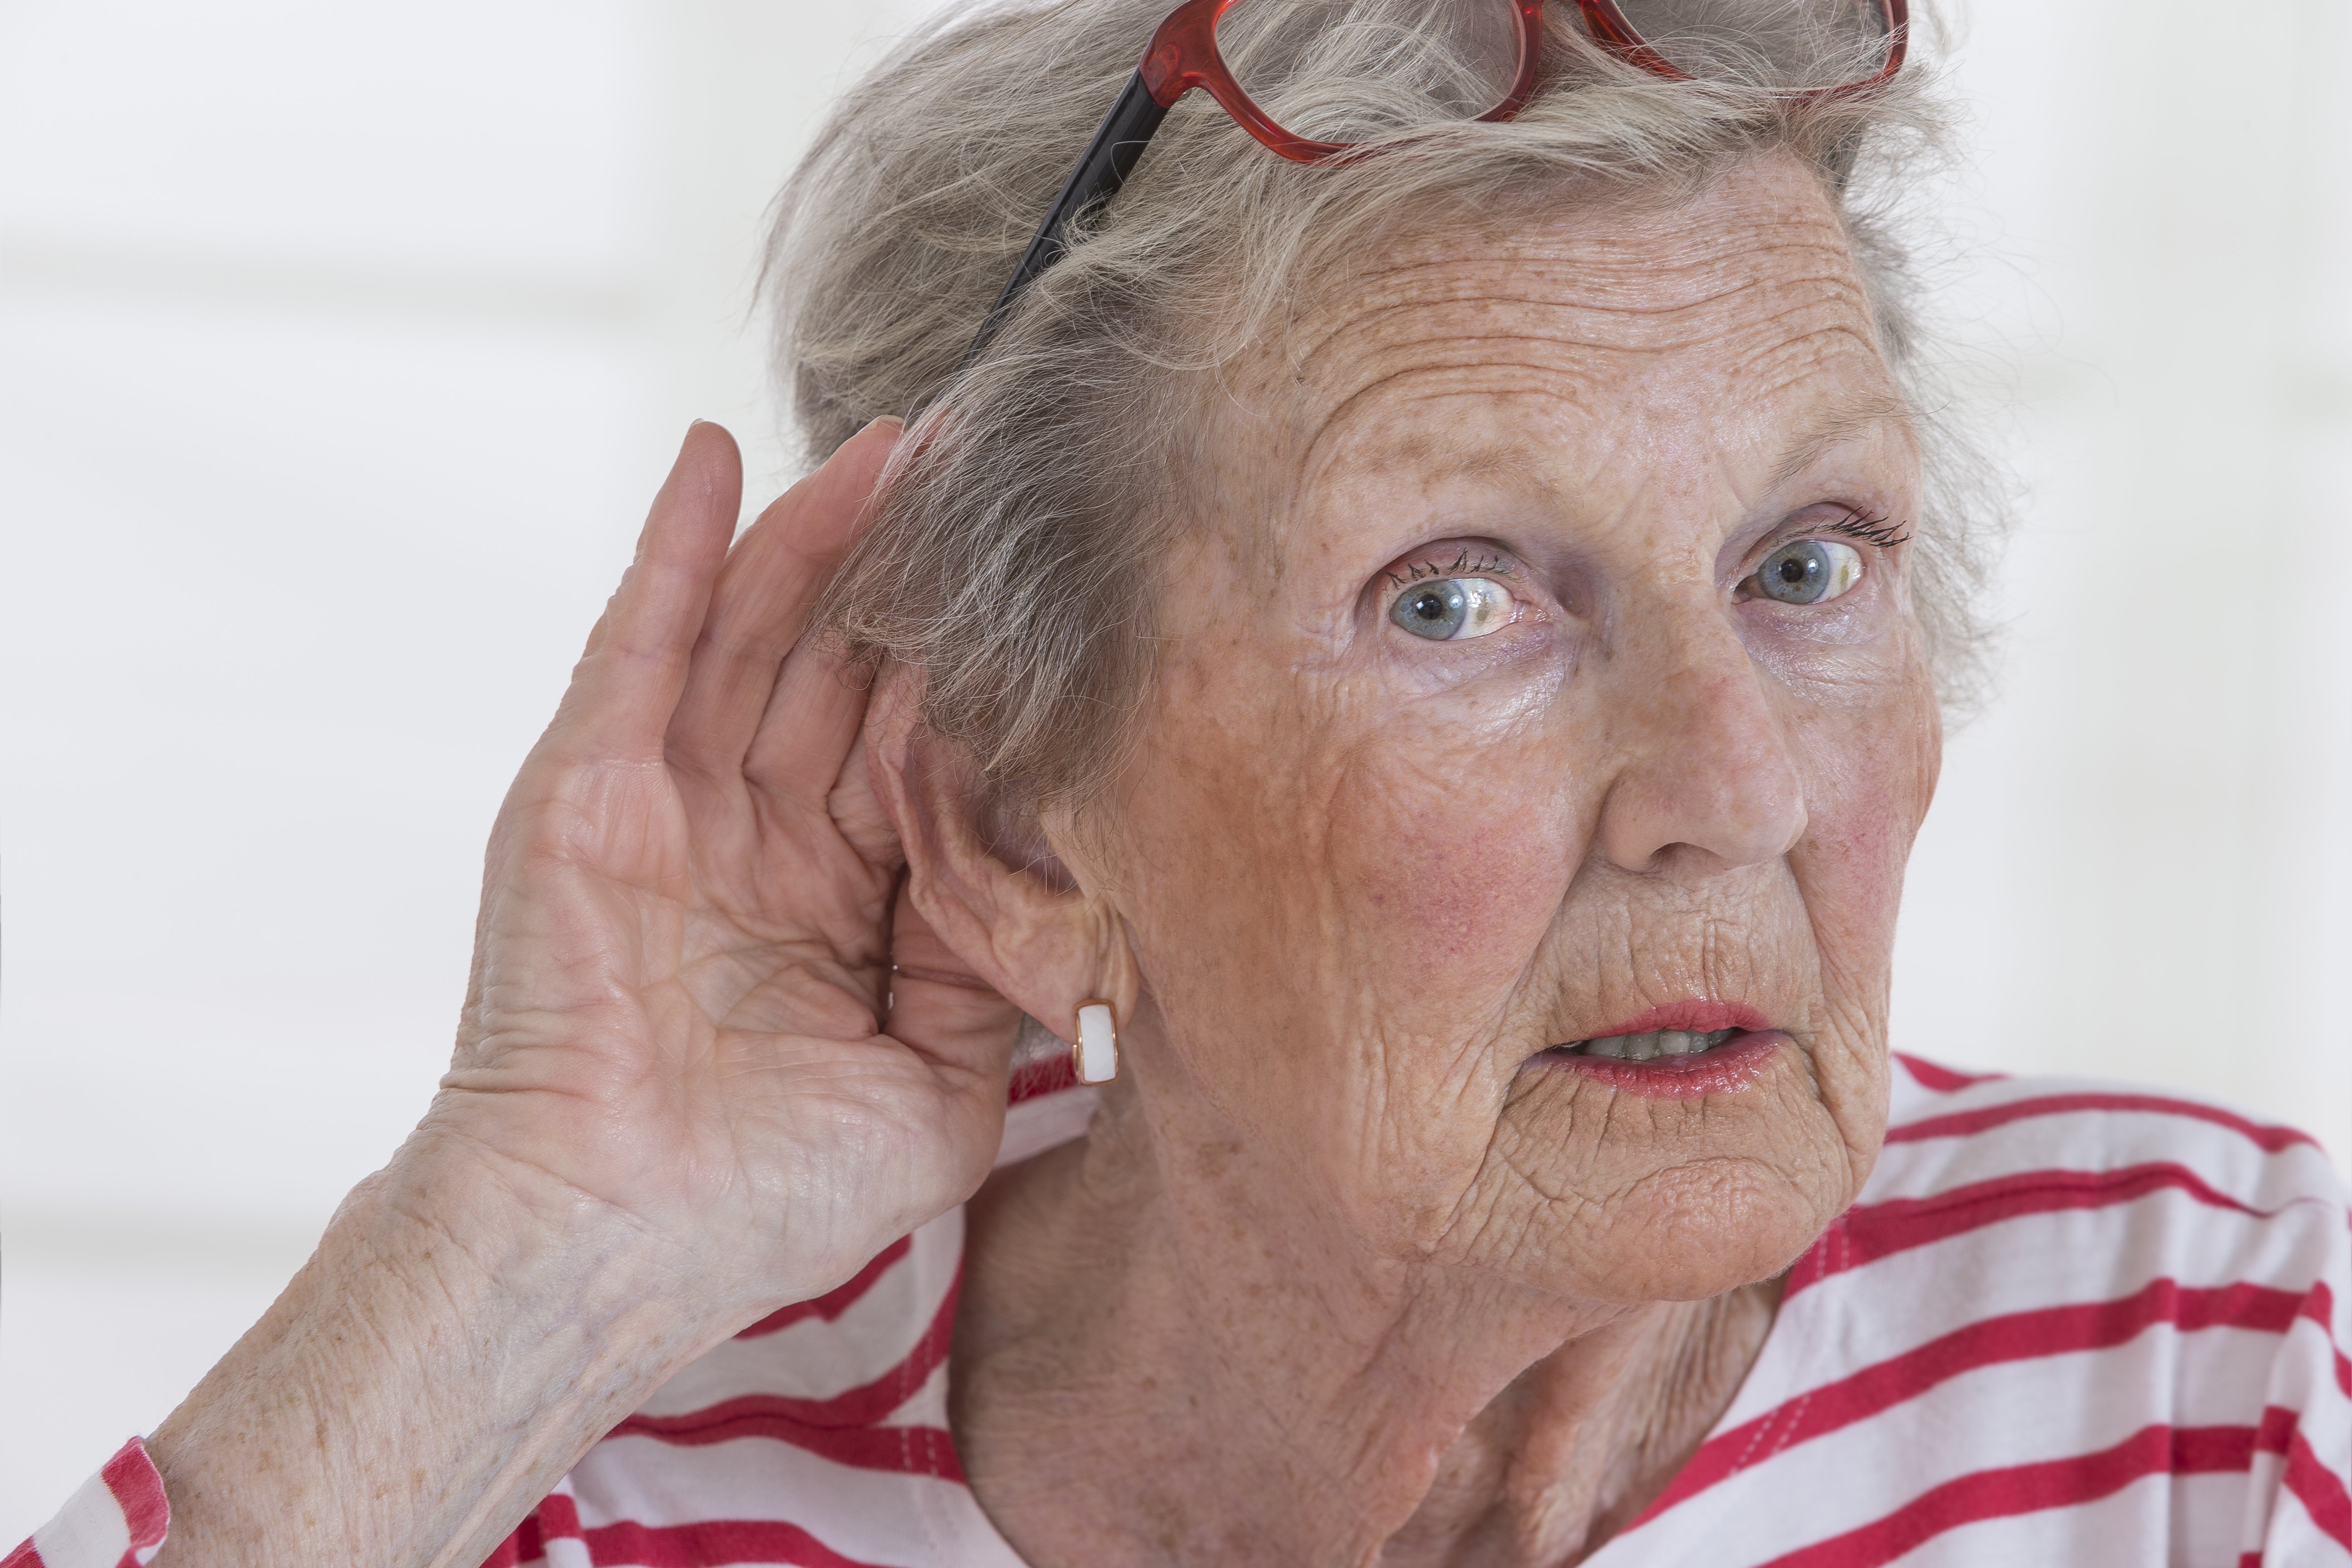 Mujer con problemas de audición. | Foto: Shutterstock